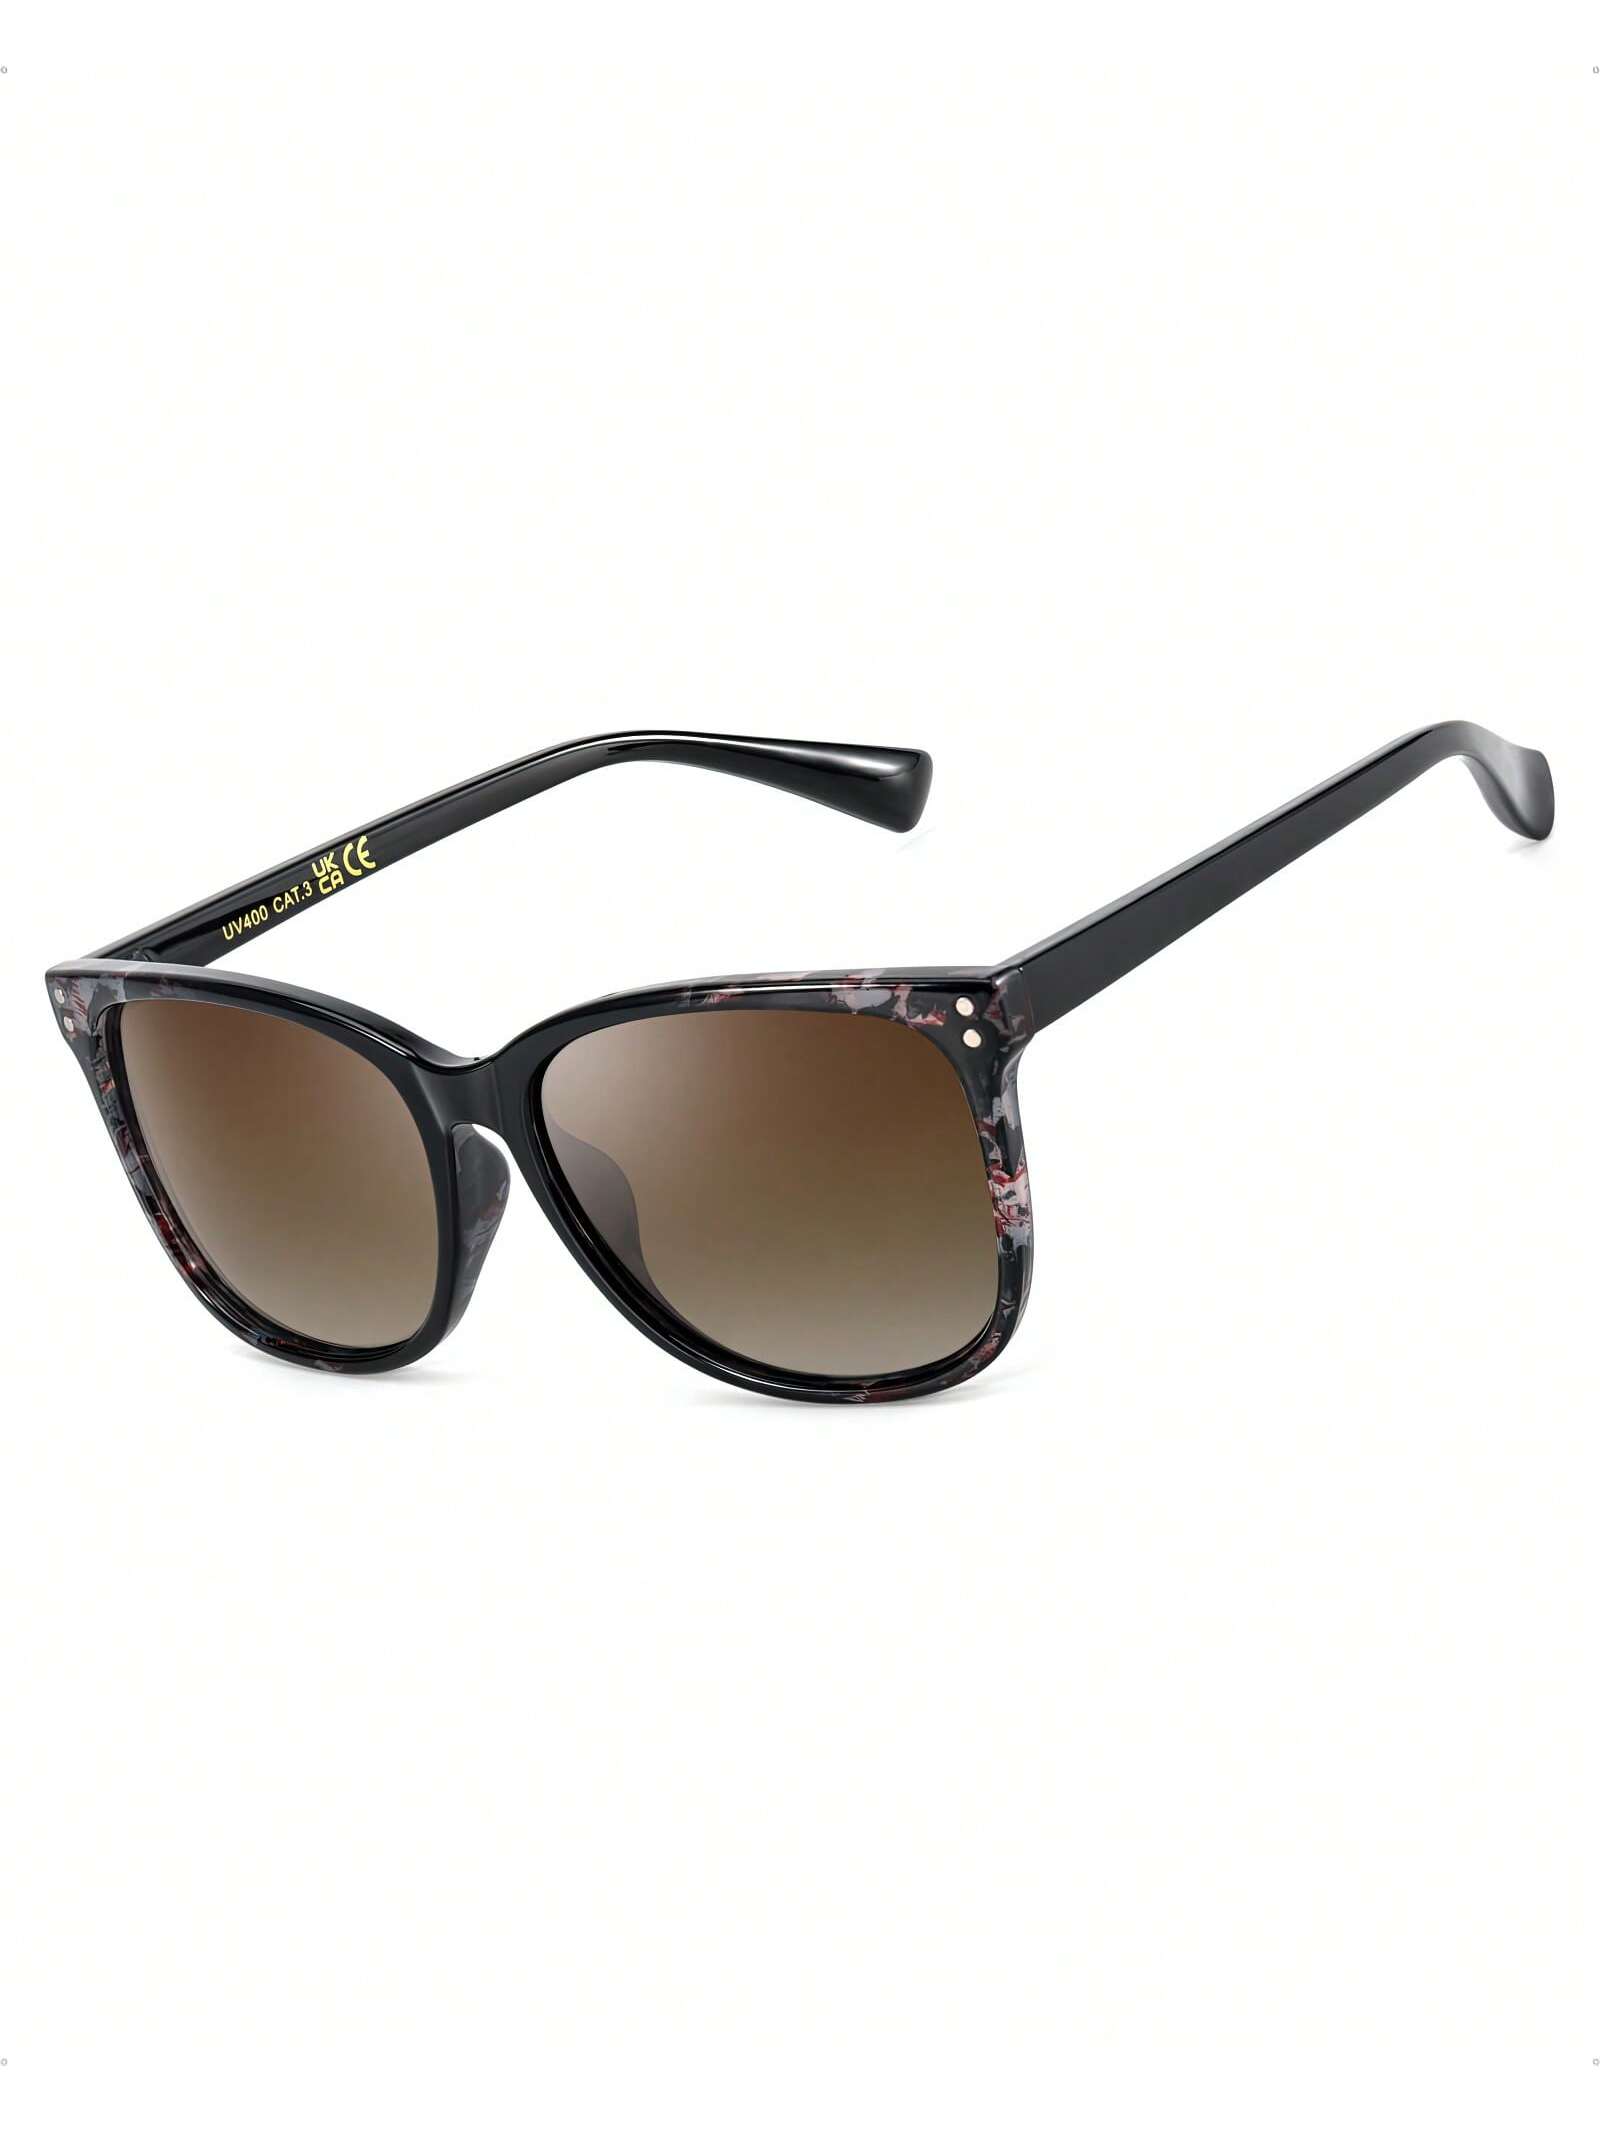 Поляризованные квадратные солнцезащитные очки Lvioe для женщин цена и фото